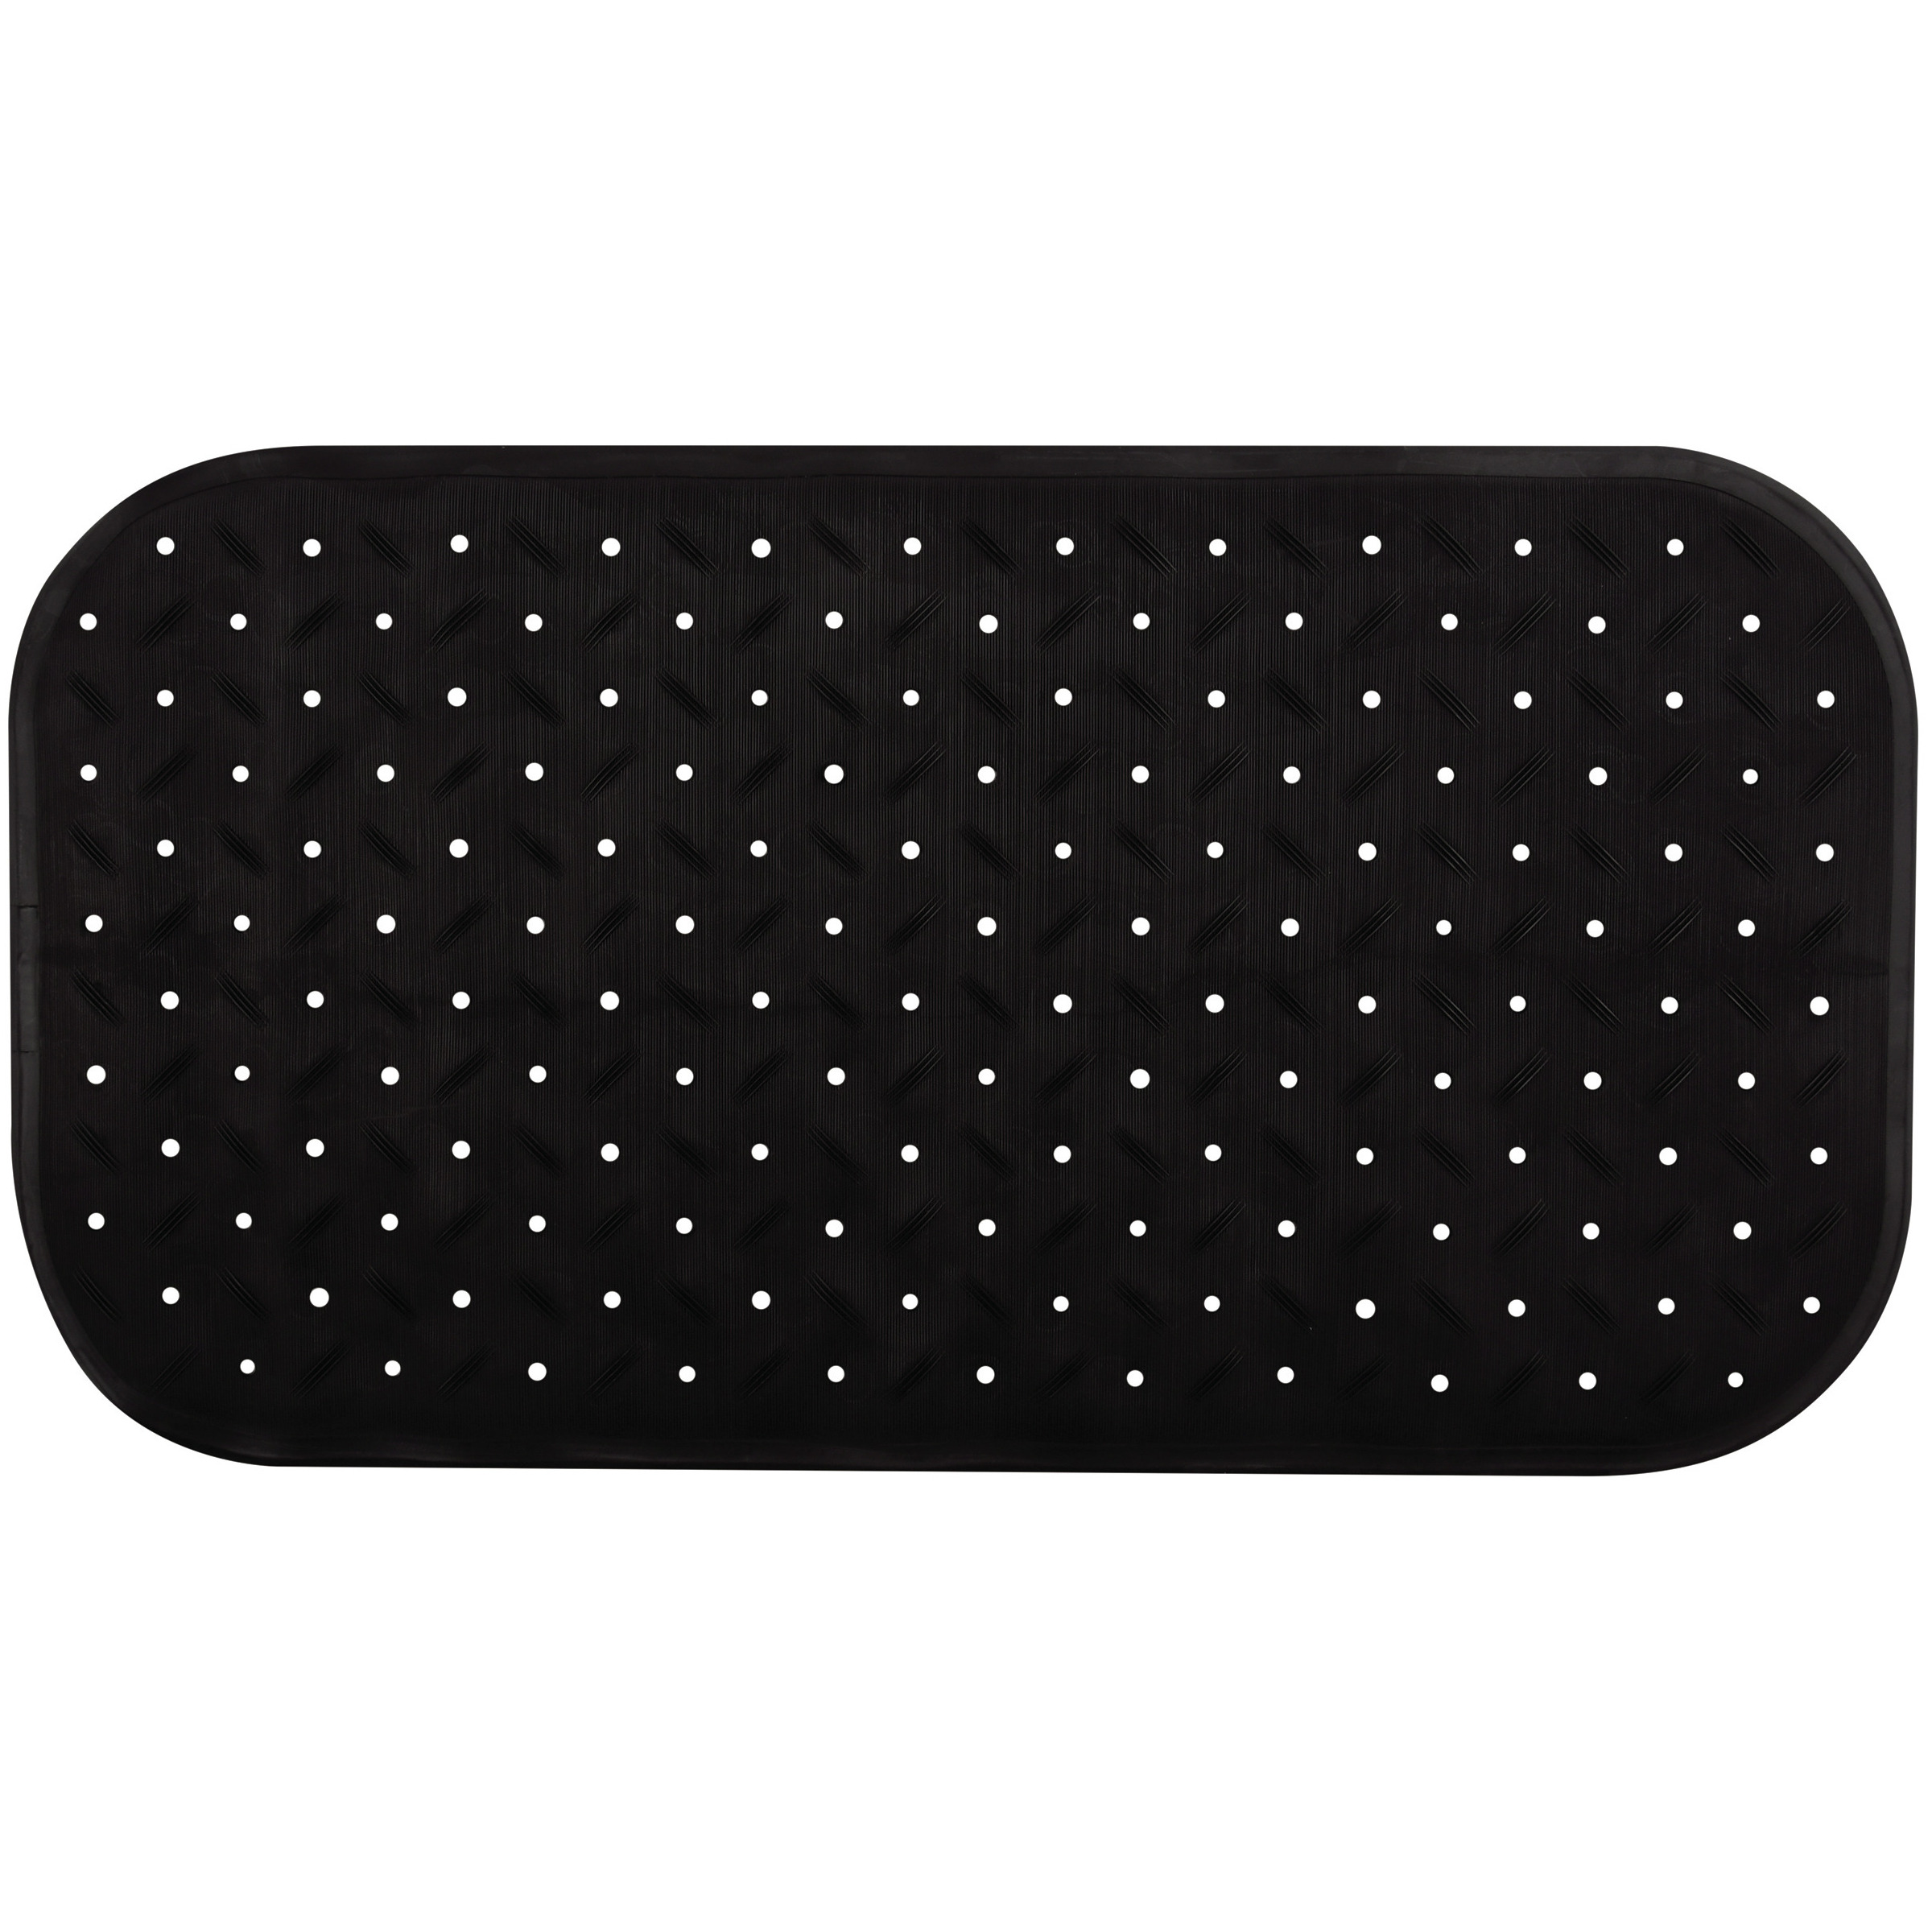 Douche-bad anti-slip mat badkamer rubber zwart 36 x 76 cm rechthoek